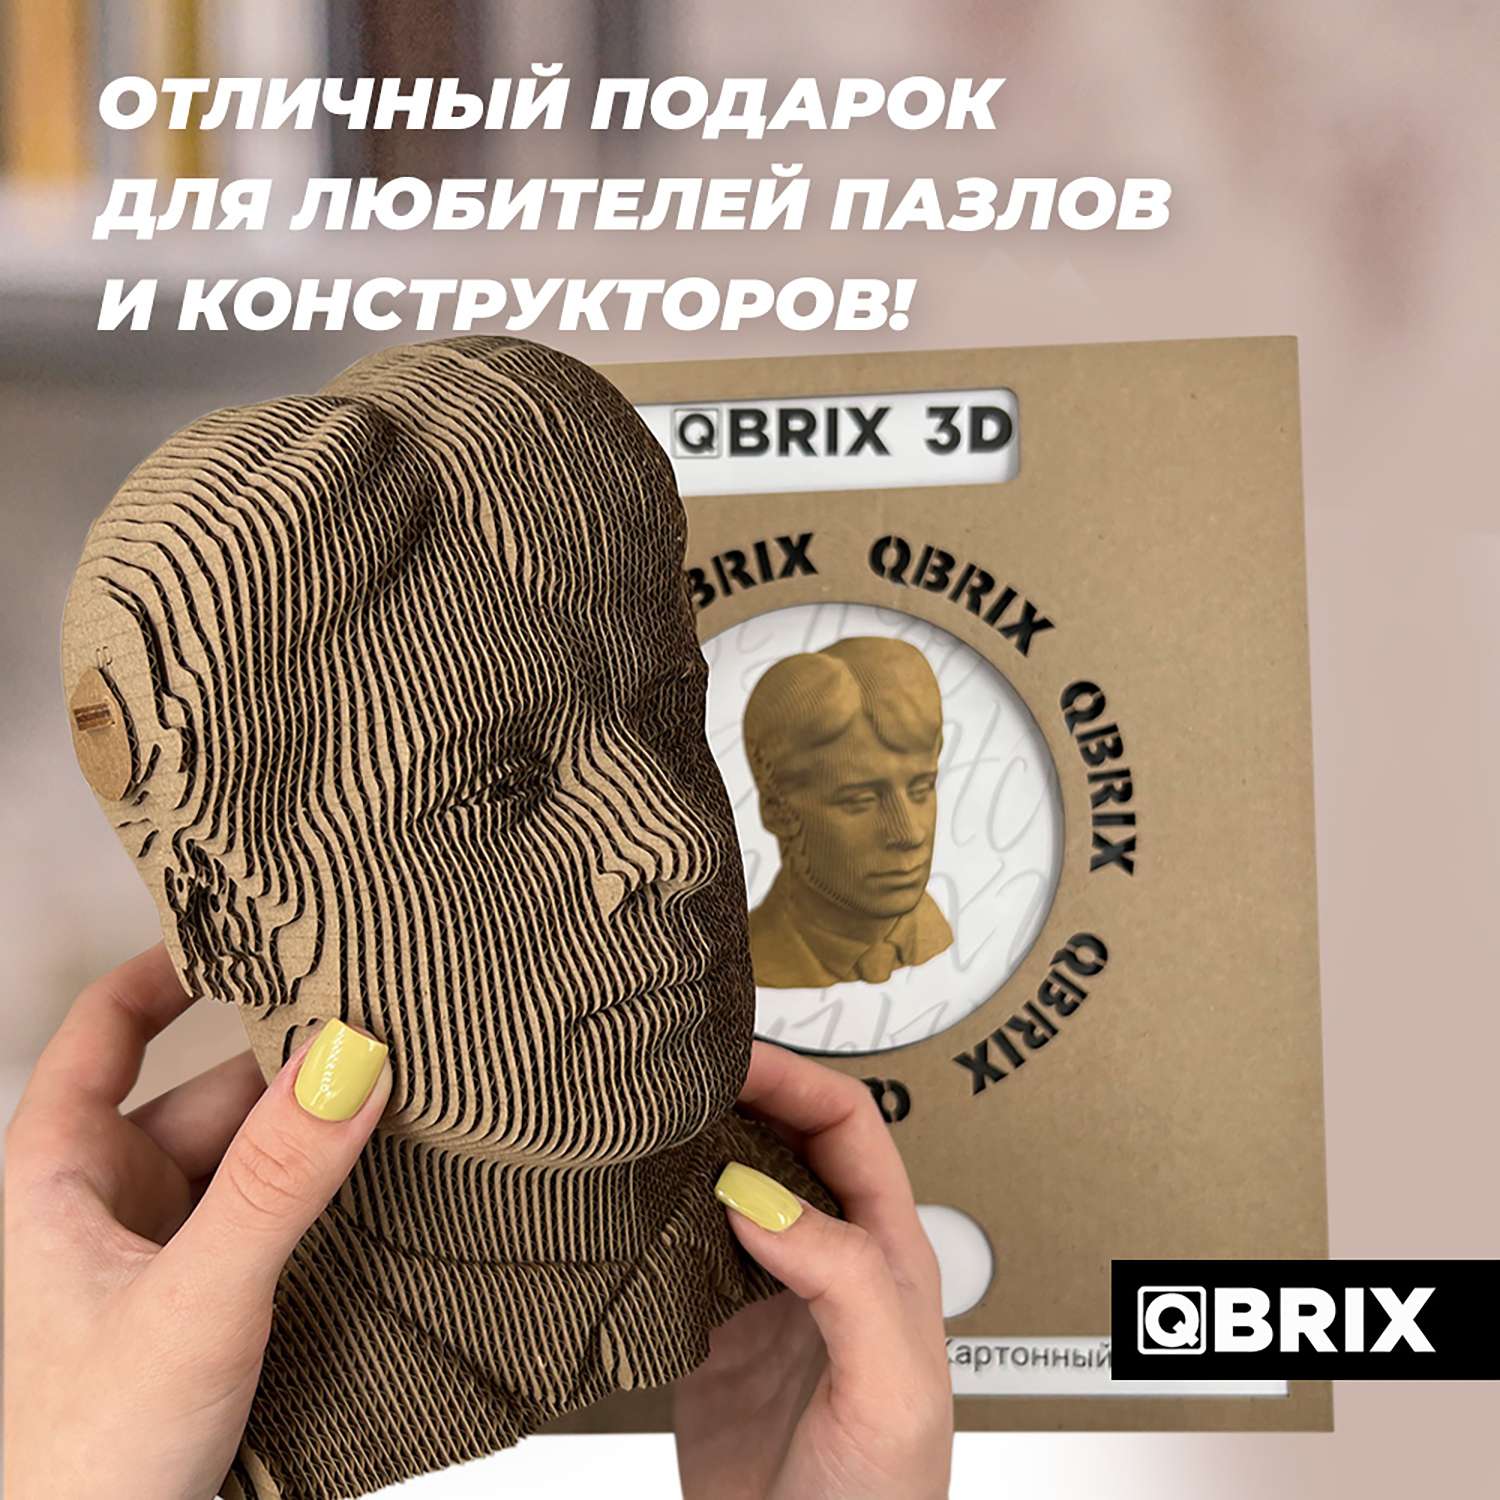 Конструктор QBRIX 3D картонный Сергей Есенин 20010 20010 - фото 6